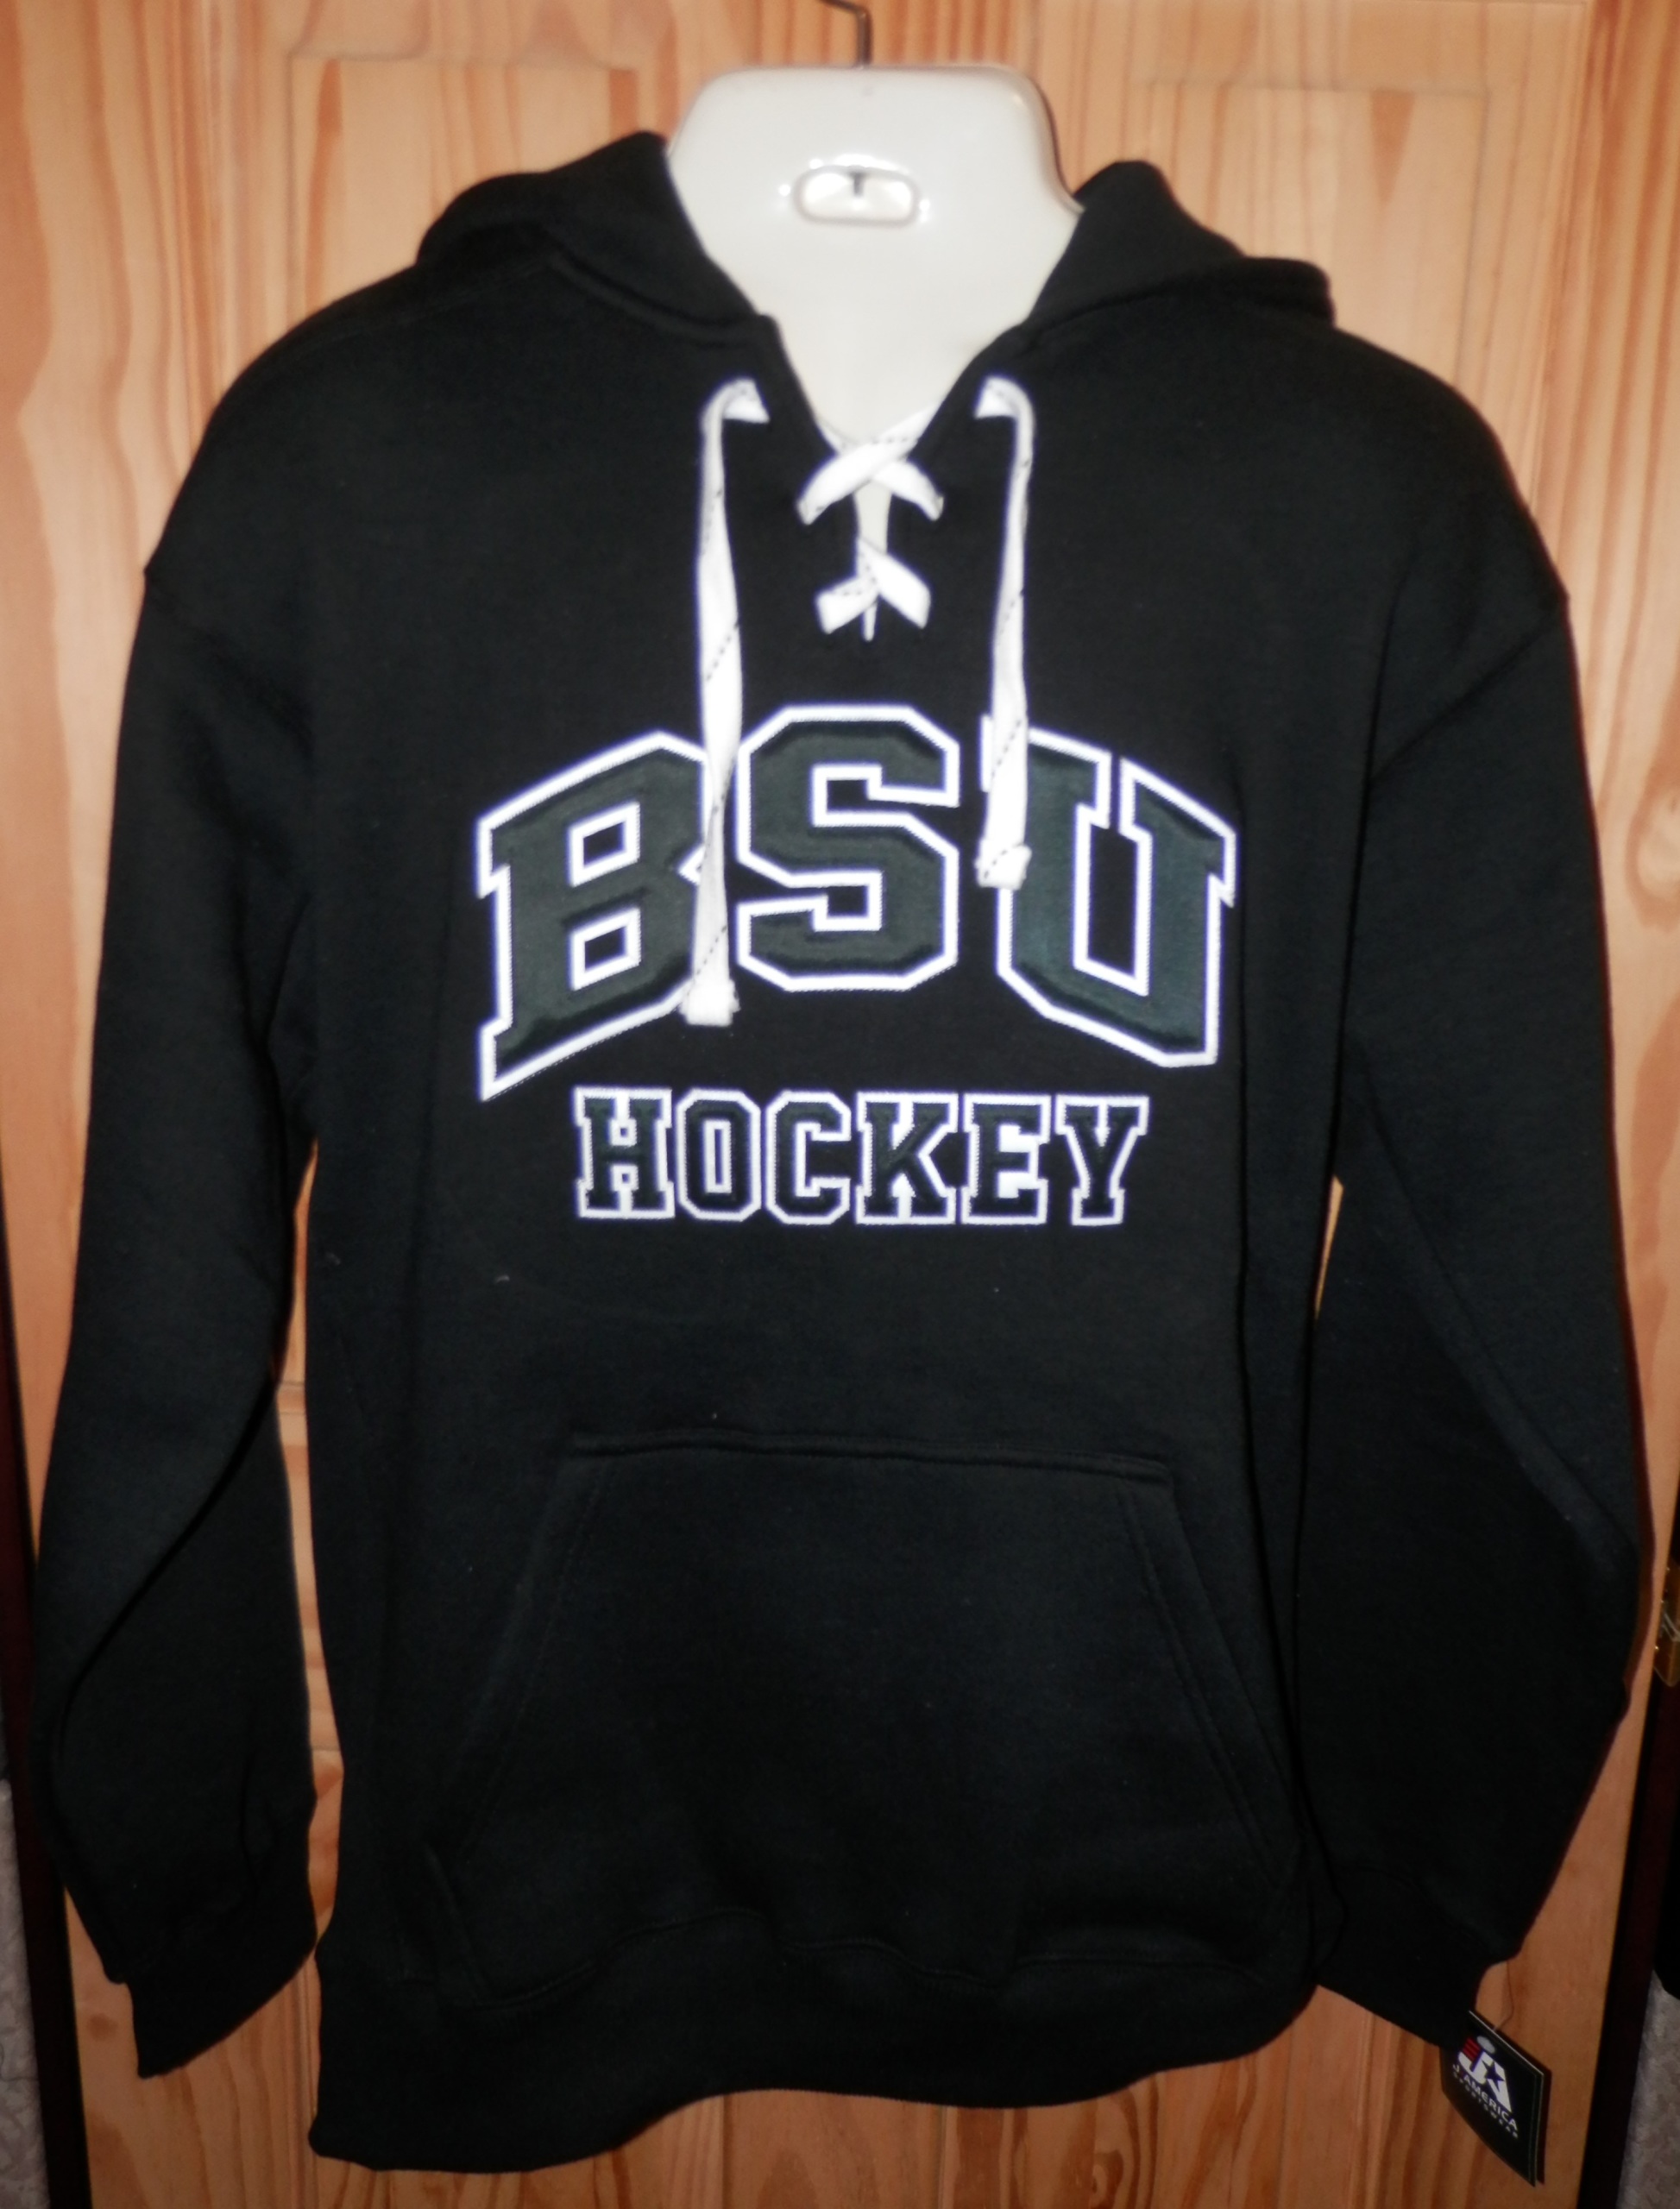 BSU Hockey Hooded Sweatshirt